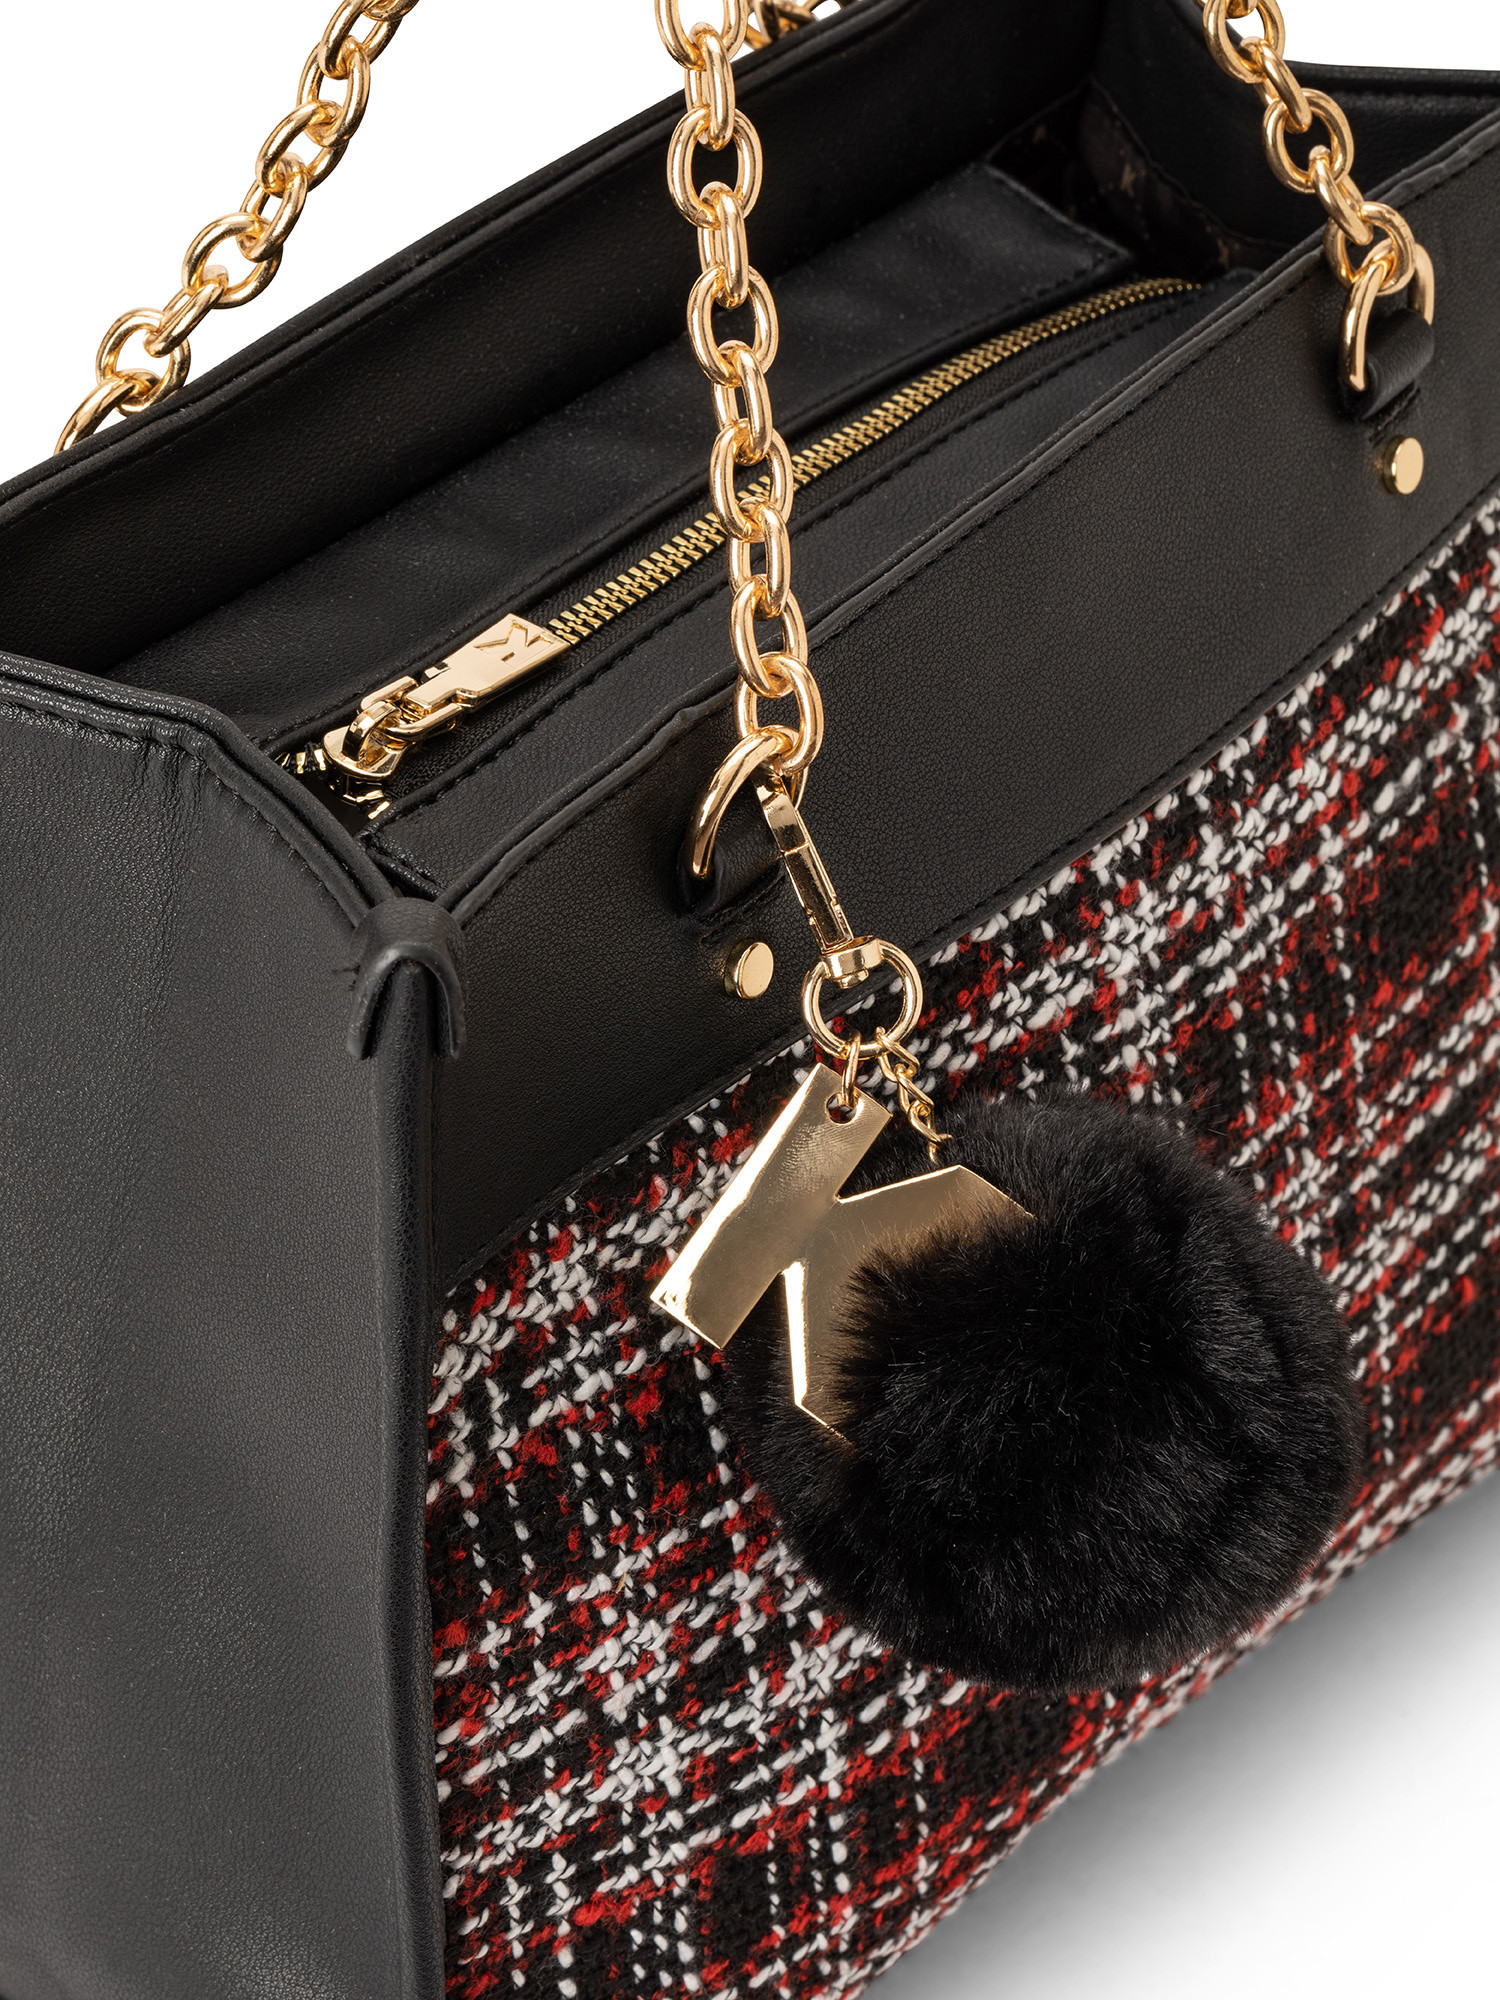 Koan - Shopping bag piccola con inserto scozzese, Nero, large image number 2